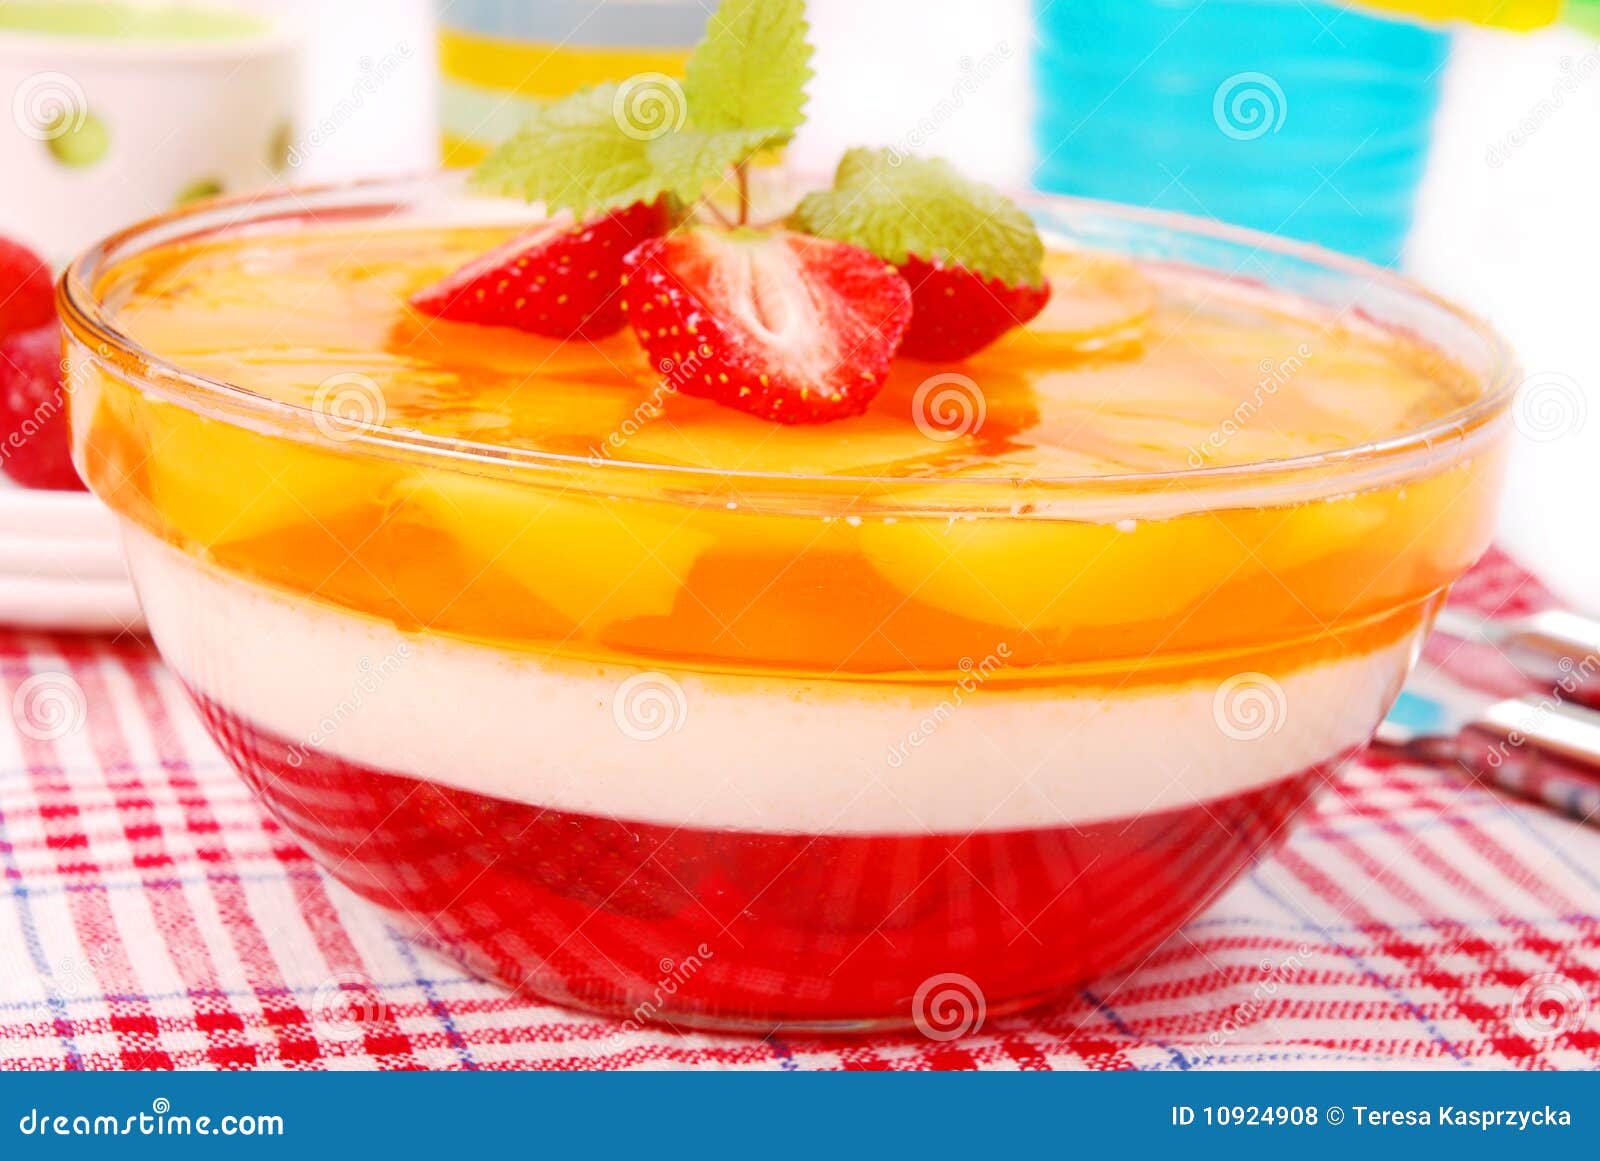 Gelatina della fragola e del mango in ciotola rotonda. Il dessert con crema, la fragola ed il mango si gelatinizzano in ciotola rotonda